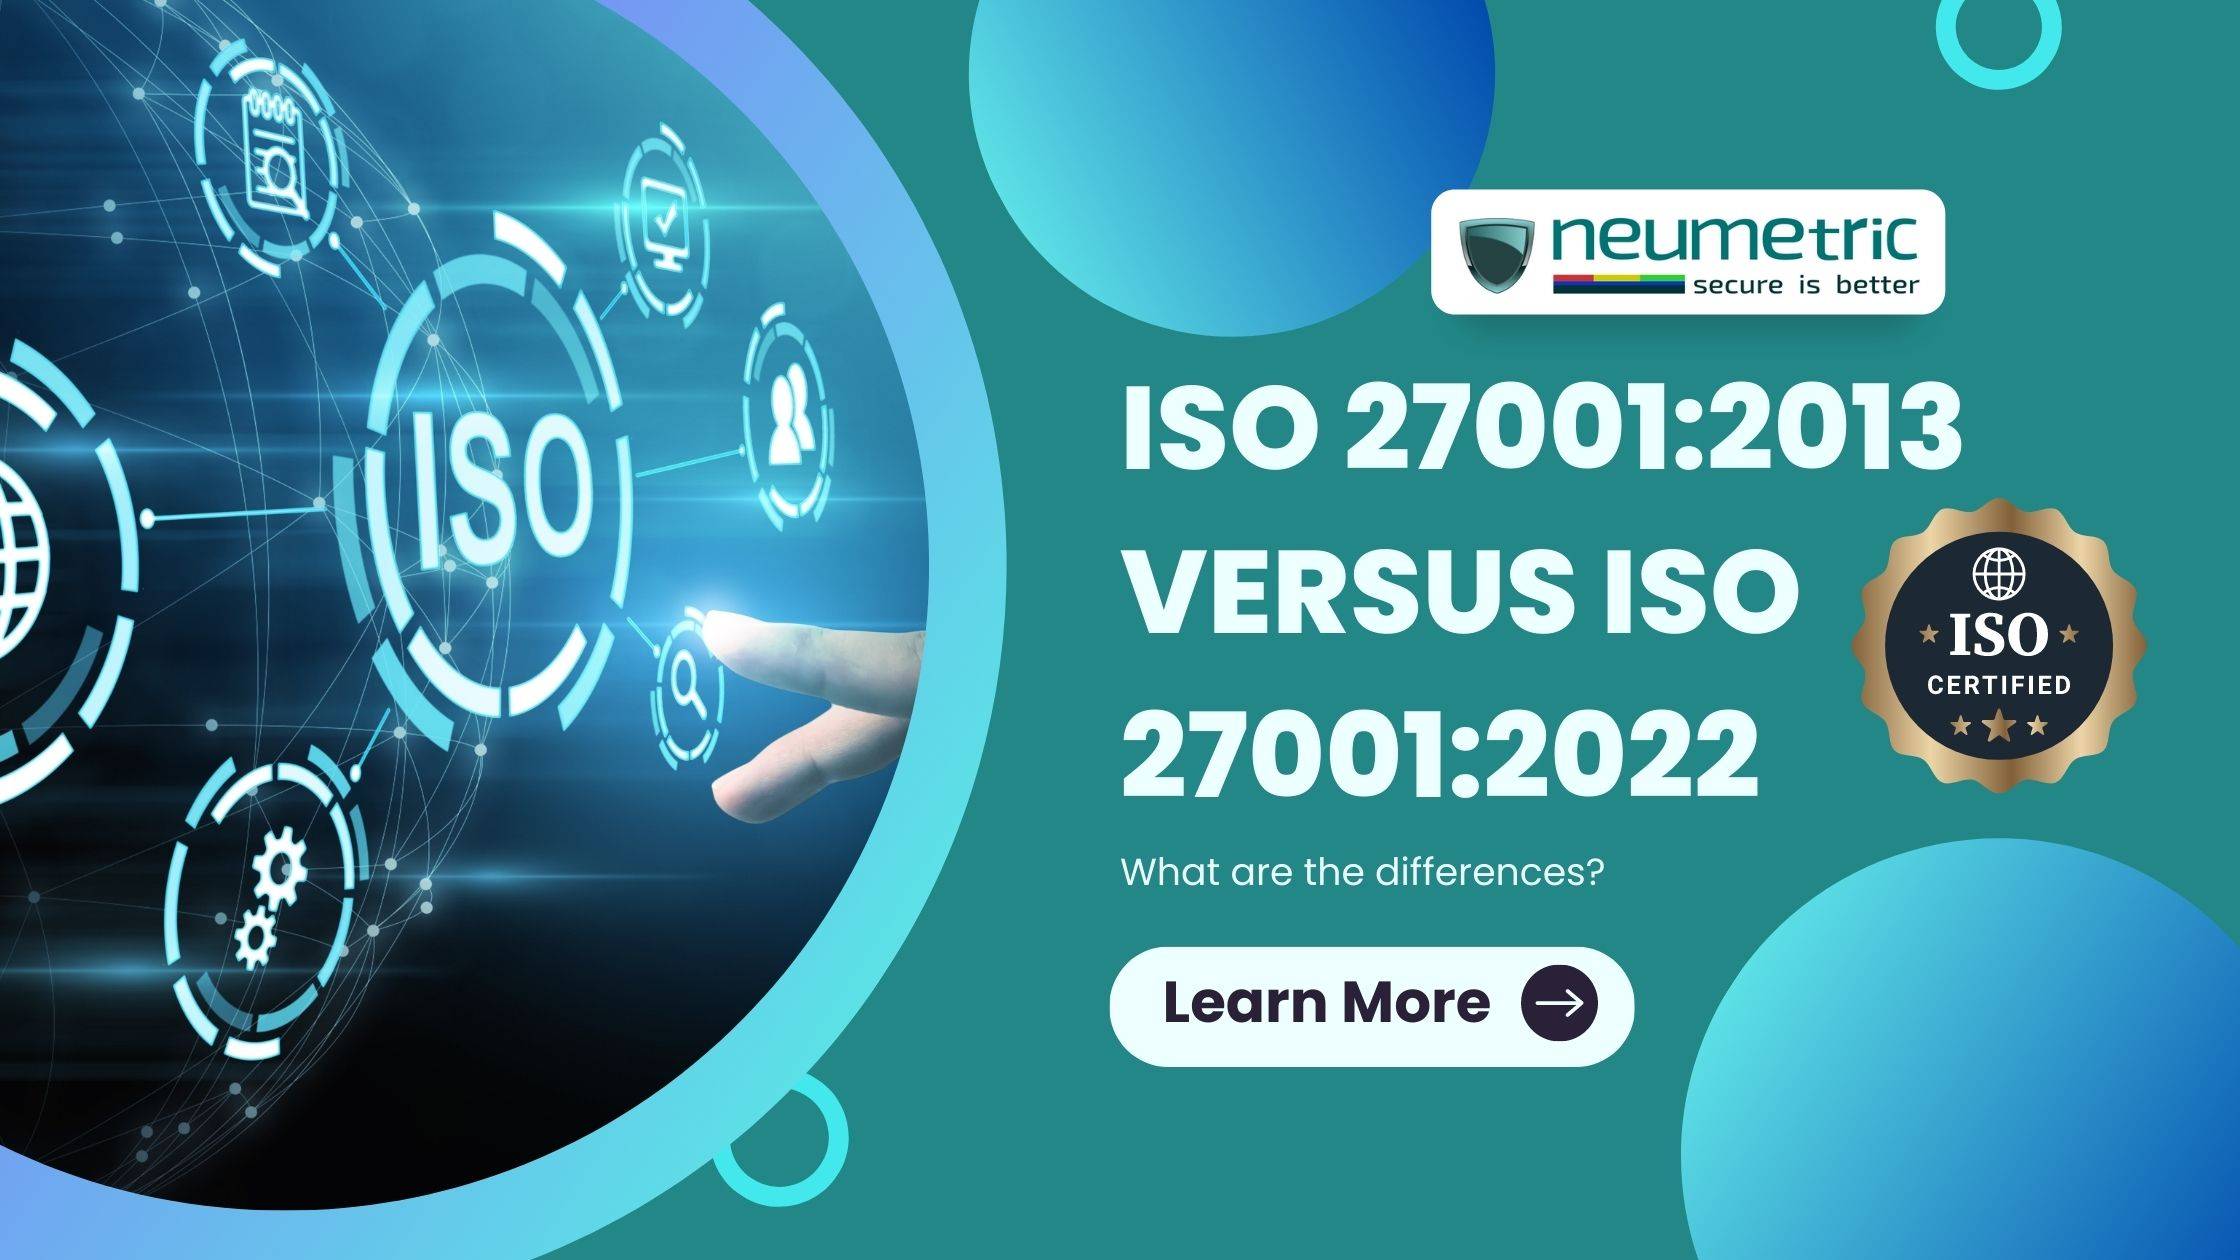 27001:2013 versus ISO 27001:2022